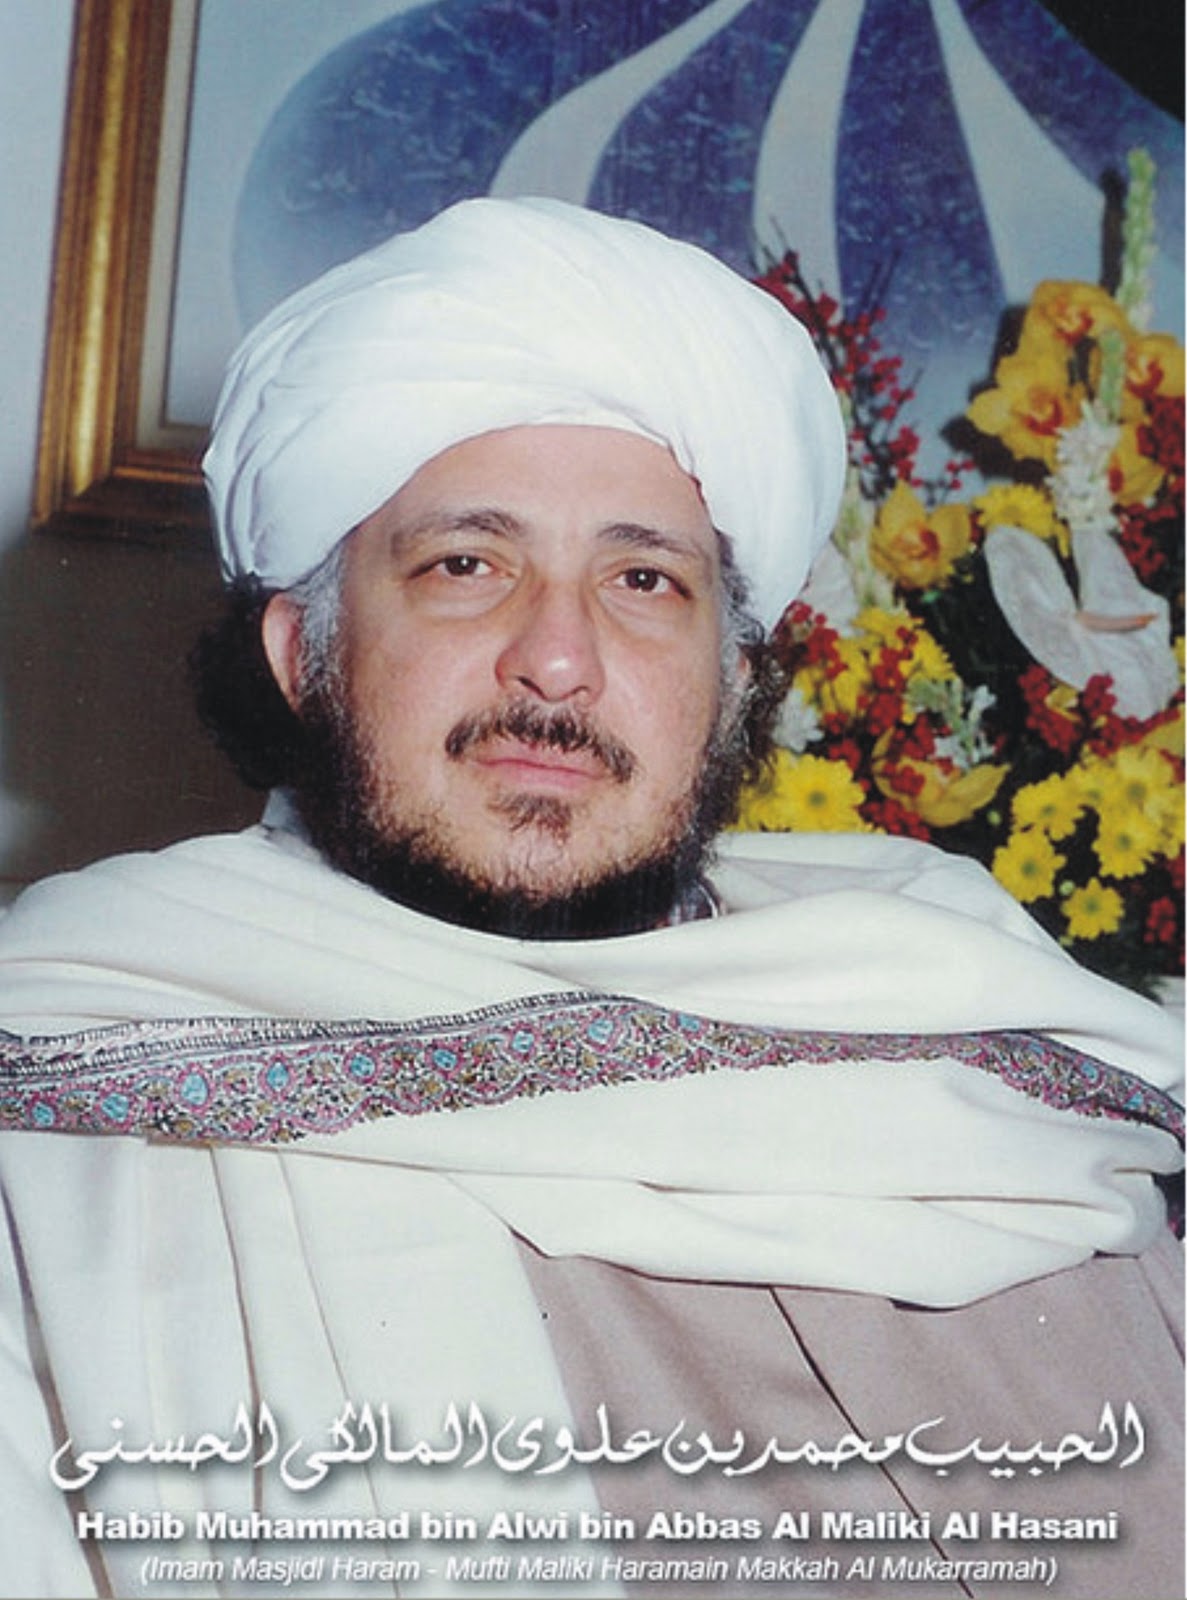 Pesantren Uswatuh Khasanah Habaib